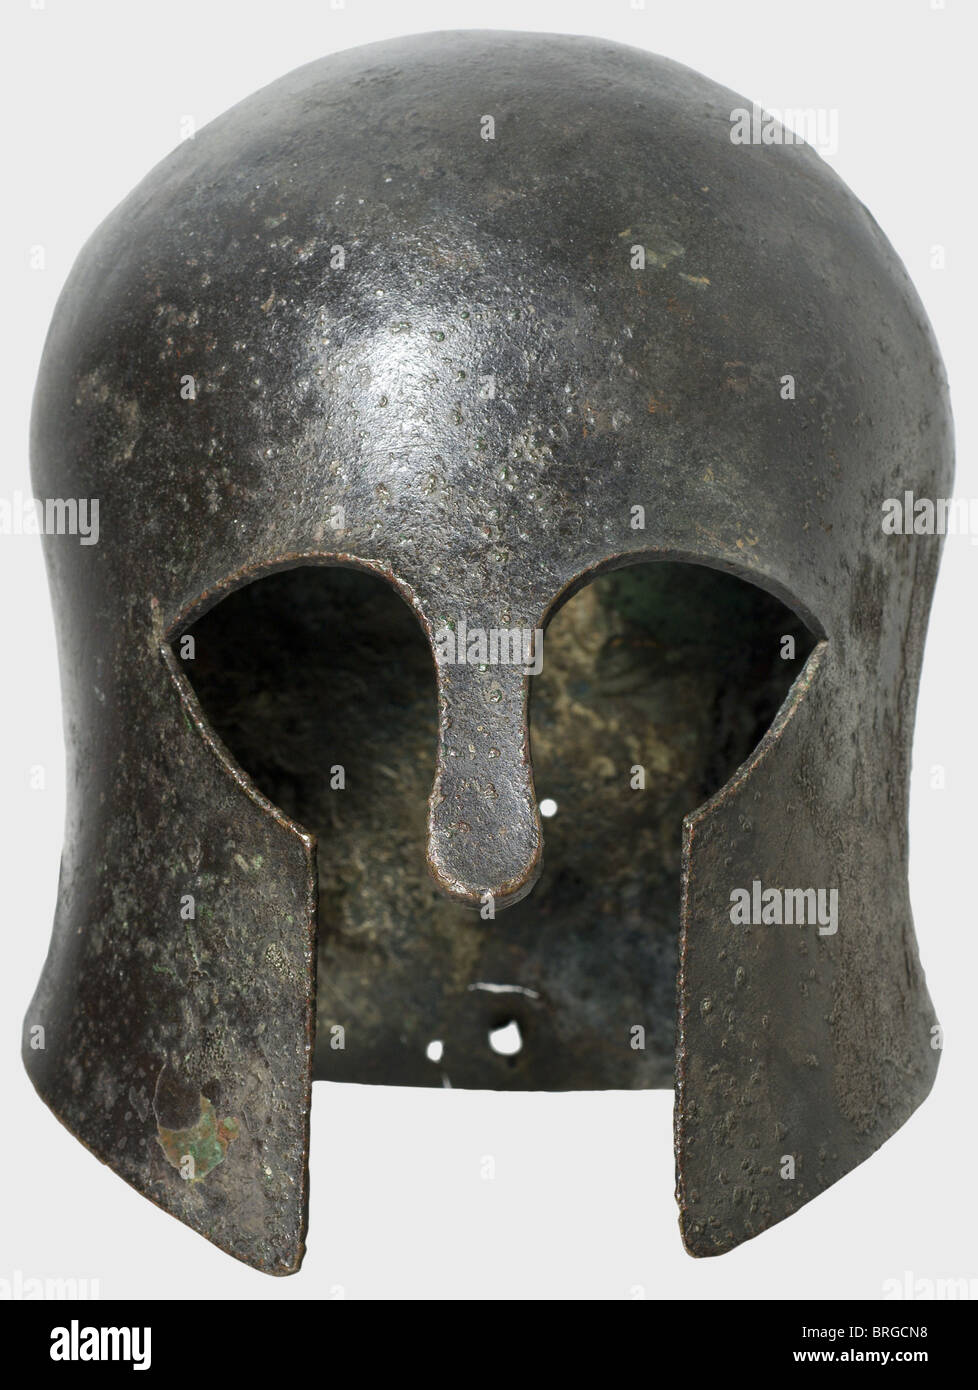 Un casque Corinthien, fin du VIIe siècle B.C.élégant, crâne en bronze gaufré avec un front et un haut, de grandes découpes d'oeil et un nez massif (matériau 7 mm d'épaisseur), sa forme courte étroite indiquant un type précoce, archaïque de casque.les côtés ont des contours légèrement incurvés.pas de trous de doublure, mais il y a deux trous au niveau de la nuque, qui sert probablement Pour soutenir une pièce décorative pour le casque.UN grand trou dans le protège-cou a évidemment résulté de l'offrande votive du casque à un sanctuaire.le métal est en bon état et ceci il historique, hist, droits additionnels-Clearences-non disponible Banque D'Images